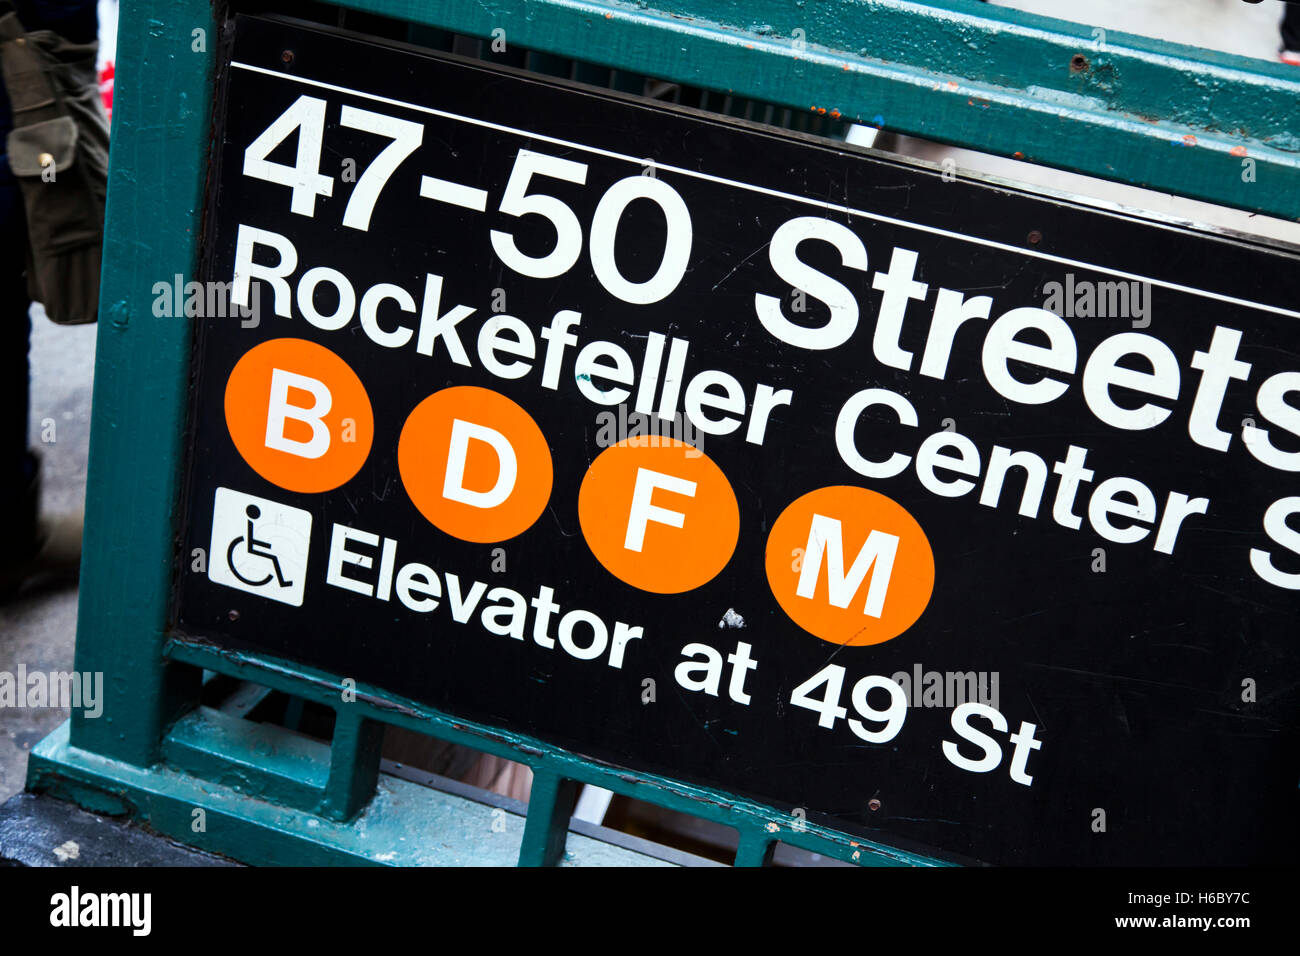 Segno raffigurante la sua entrata al 47-50 st. Il Rockefeller Center la stazione della metropolitana di Manhattan, New York. Foto Stock